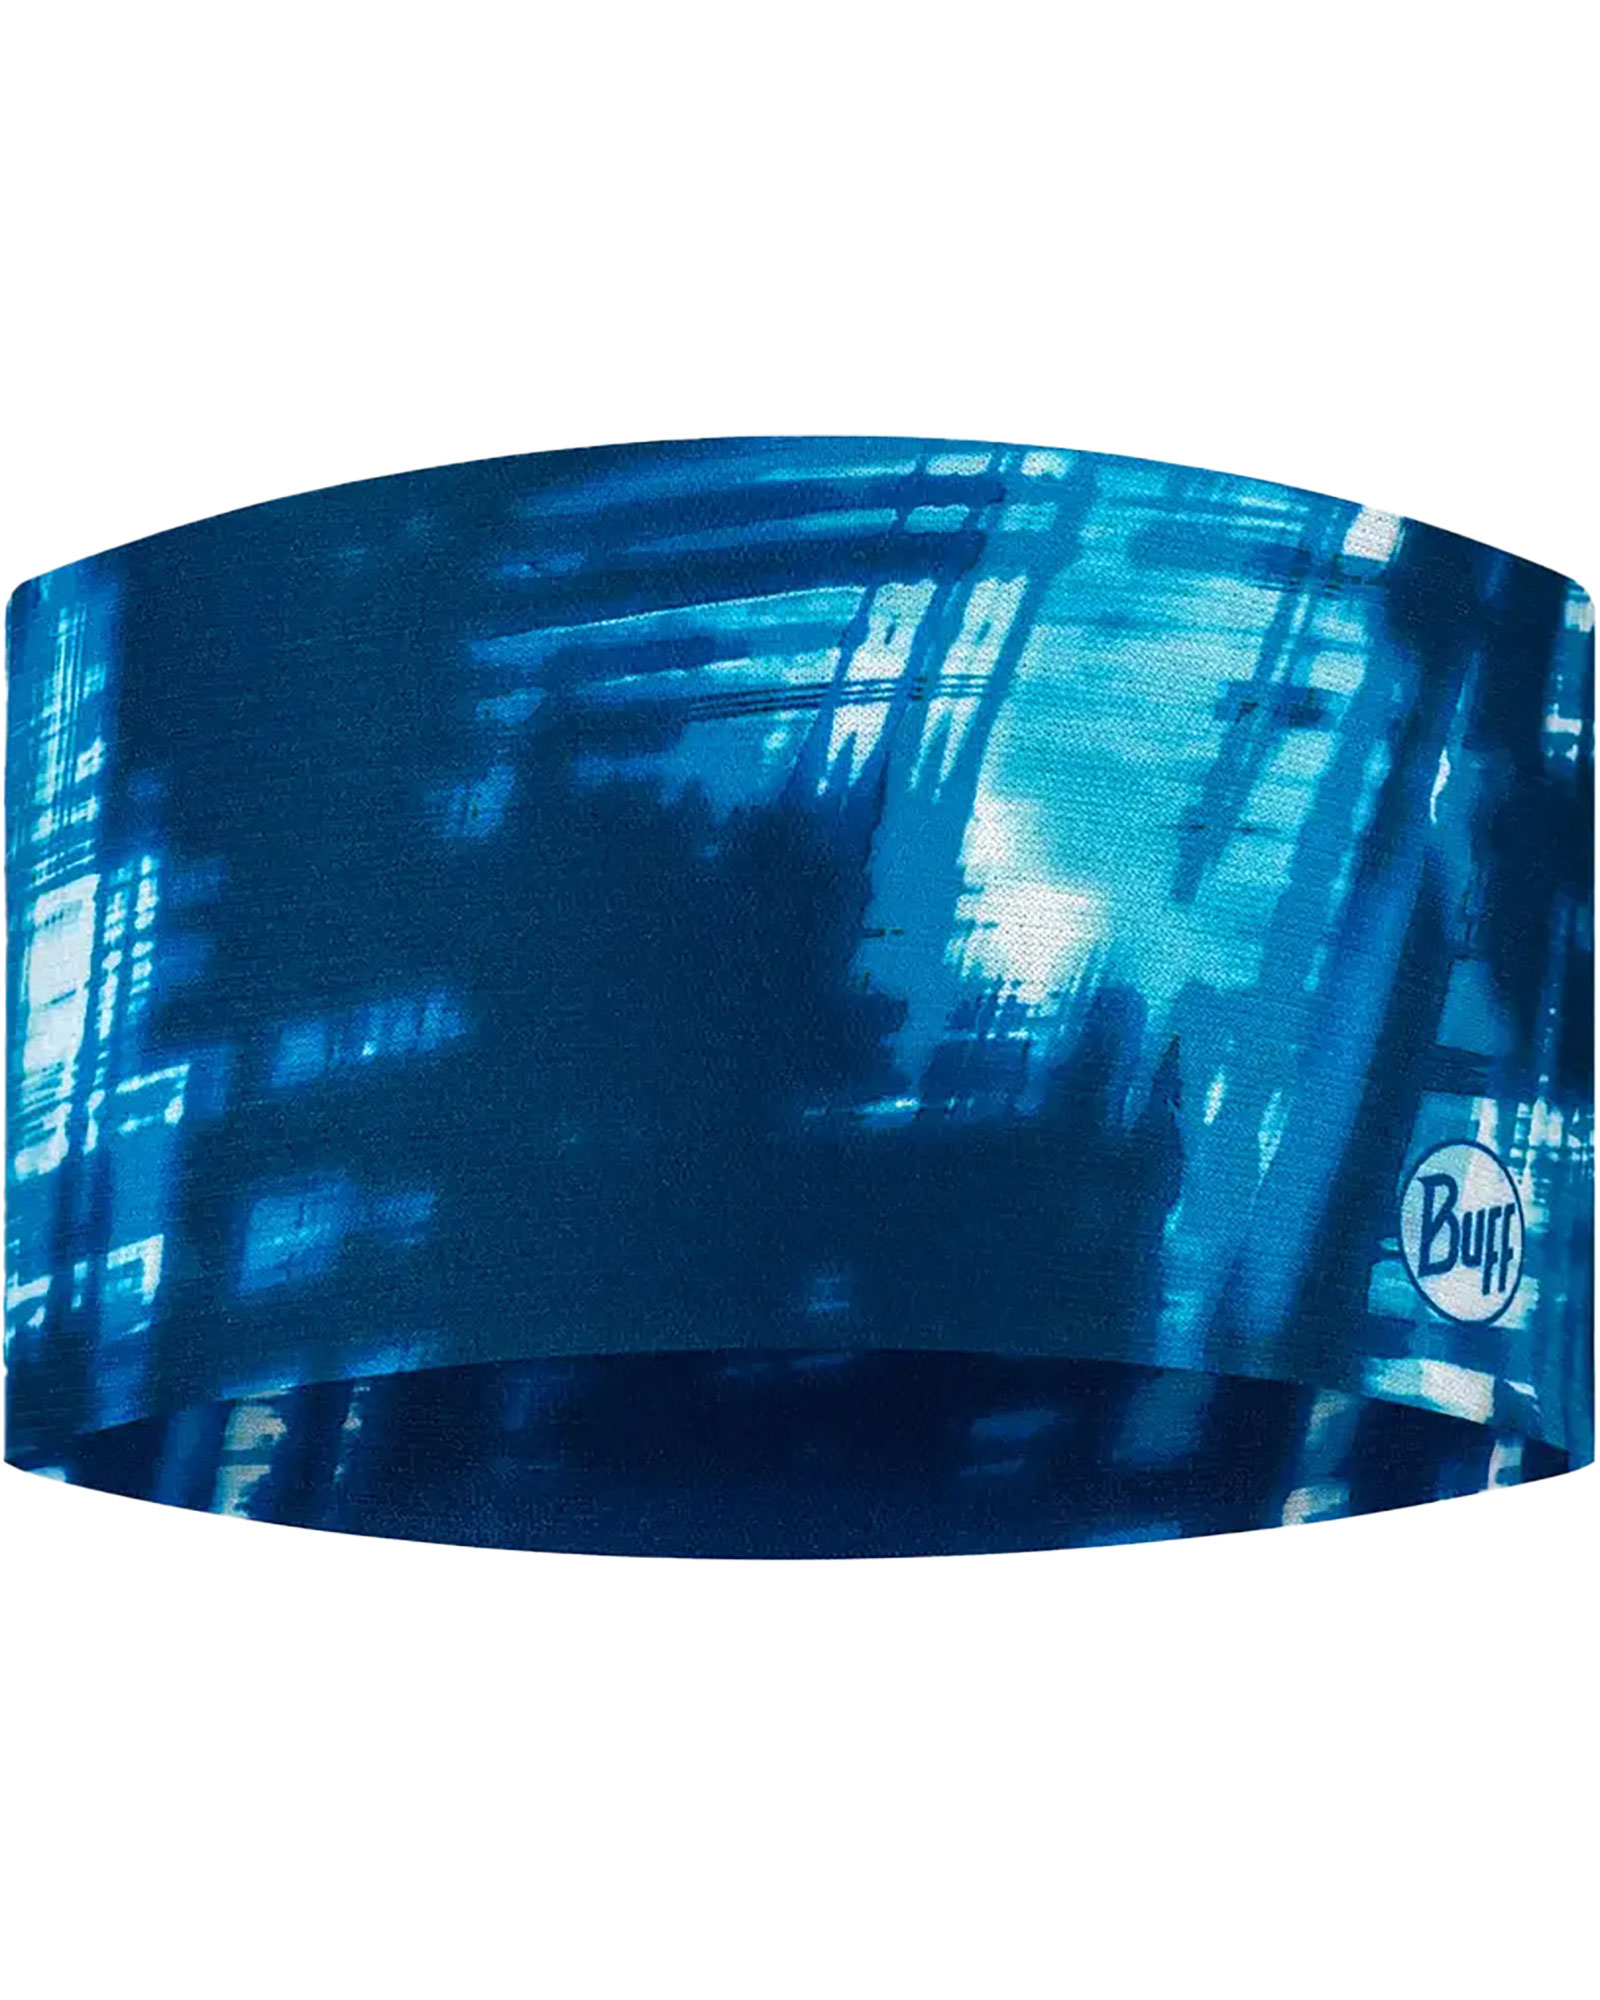 Buff Coolnet UV Wide Headband - Attel Blue - Attel Blue